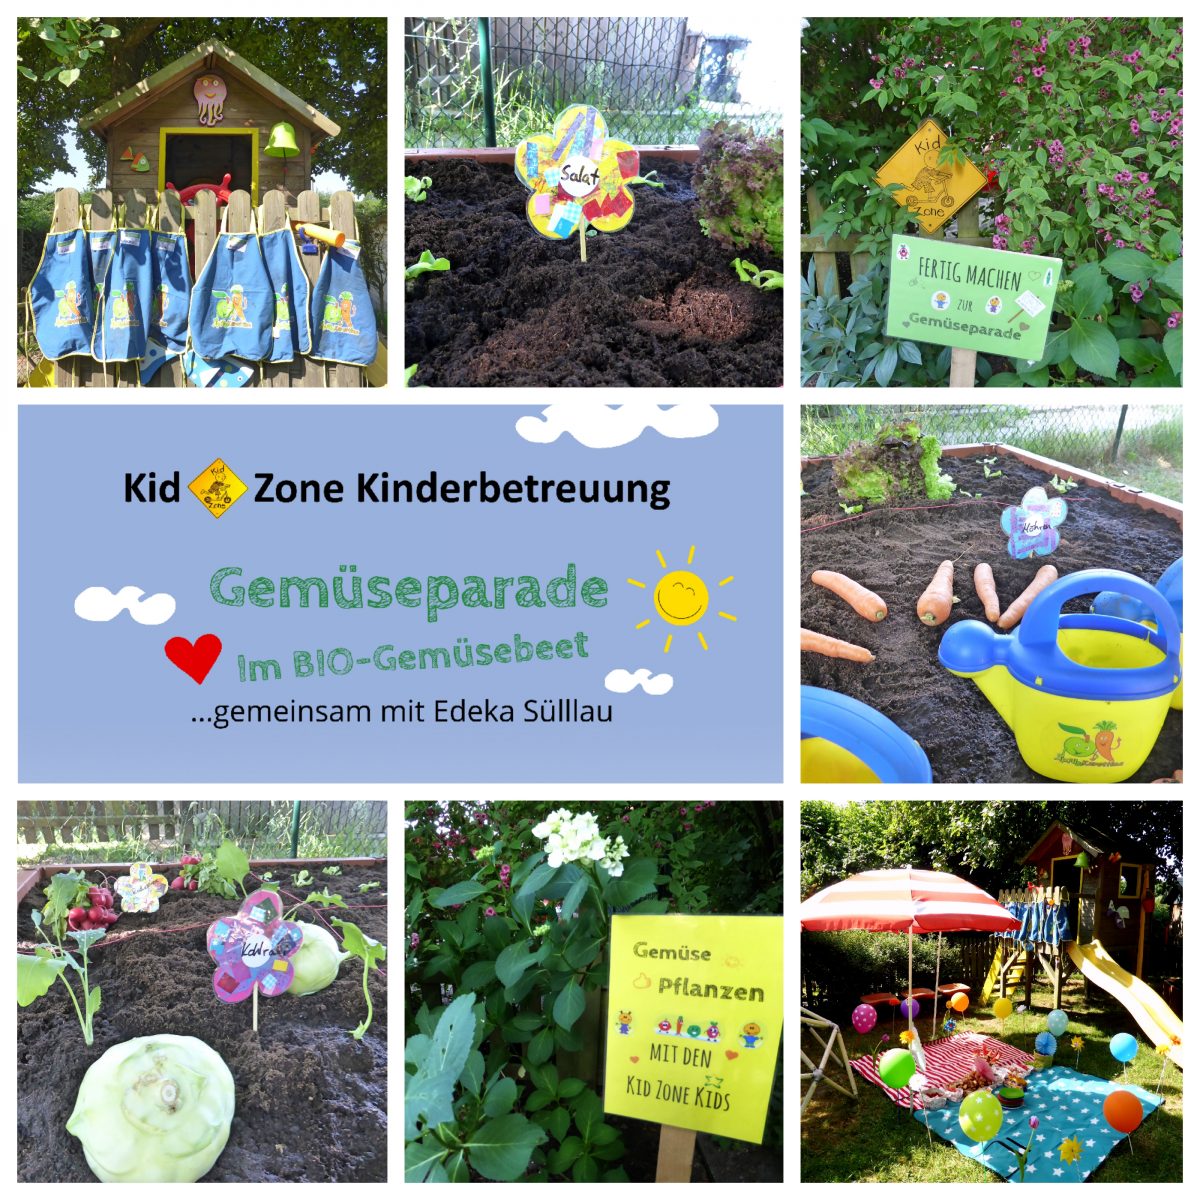 Kid Zone Aktion Gemüsebeet Bepflanzung 2018